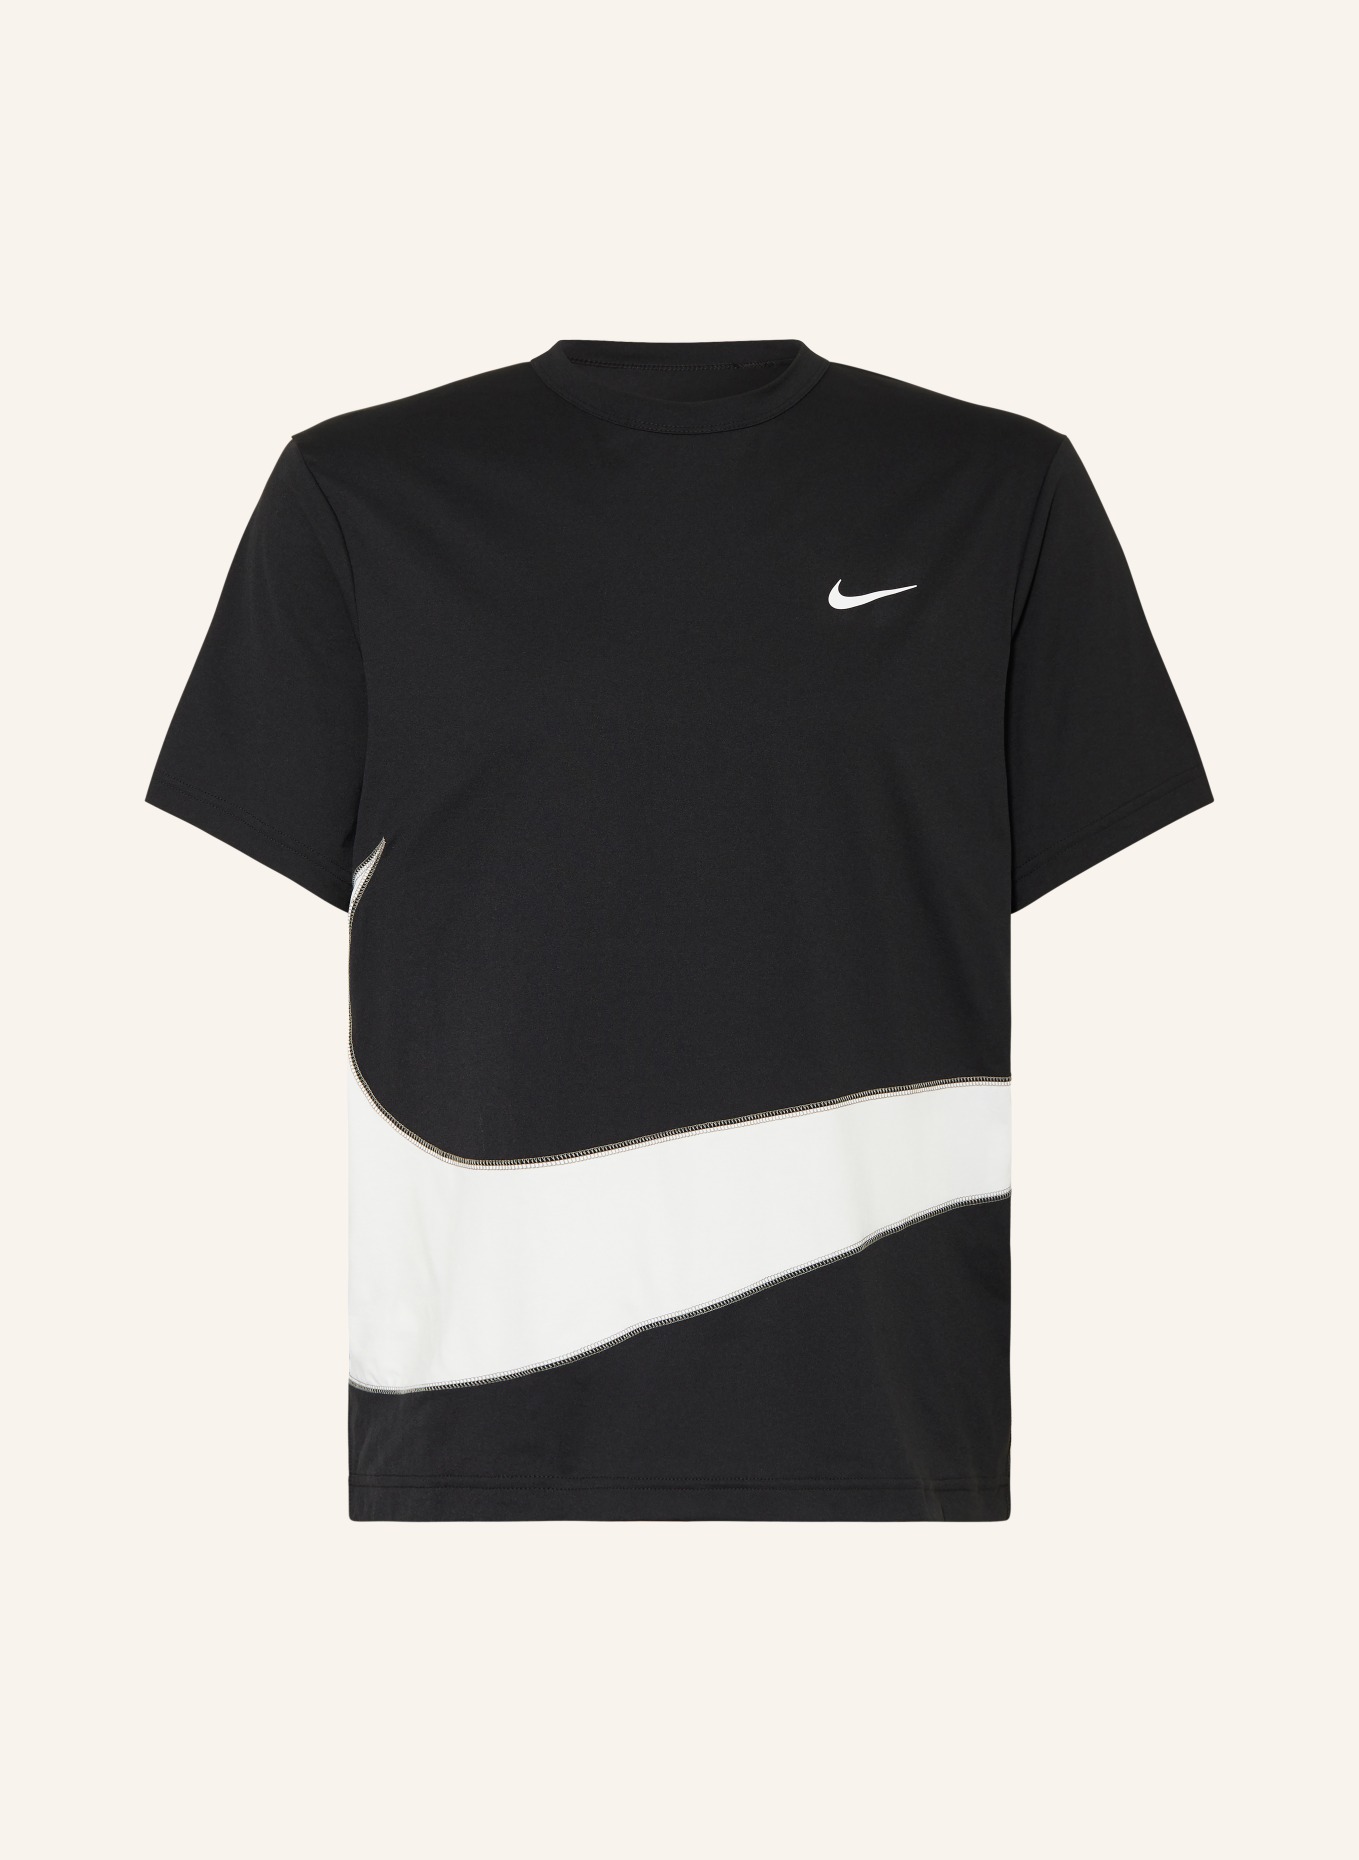 Nike T-shirt DRI-FIT UV HYVERSE, Color: BLACK/ WHITE (Image 1)